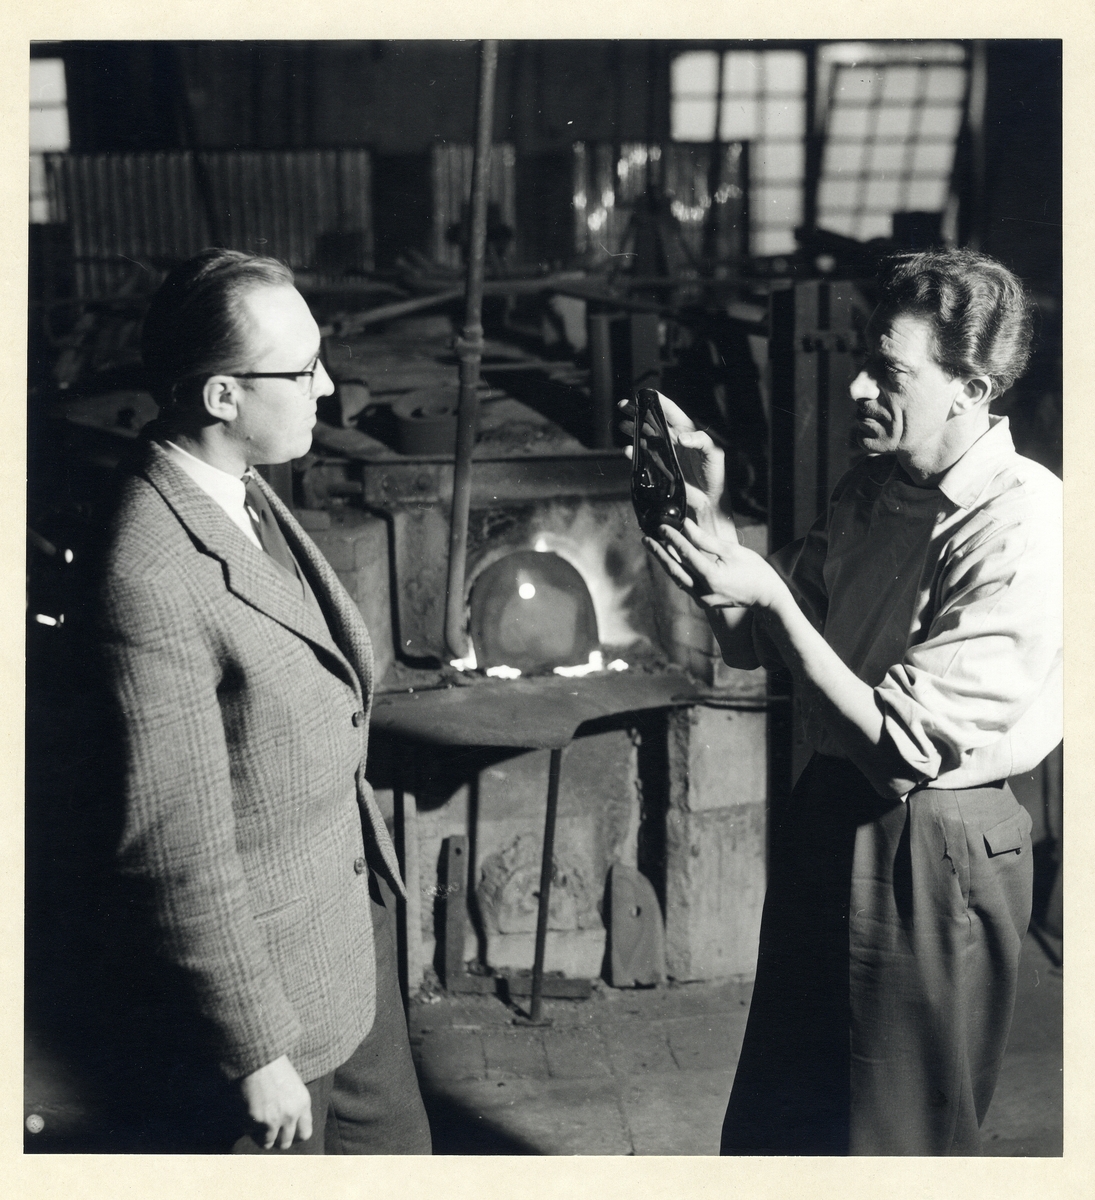 Glastillverkning, Gullaskruvs glasbruk.
En arbetare förevisar ett föremål.